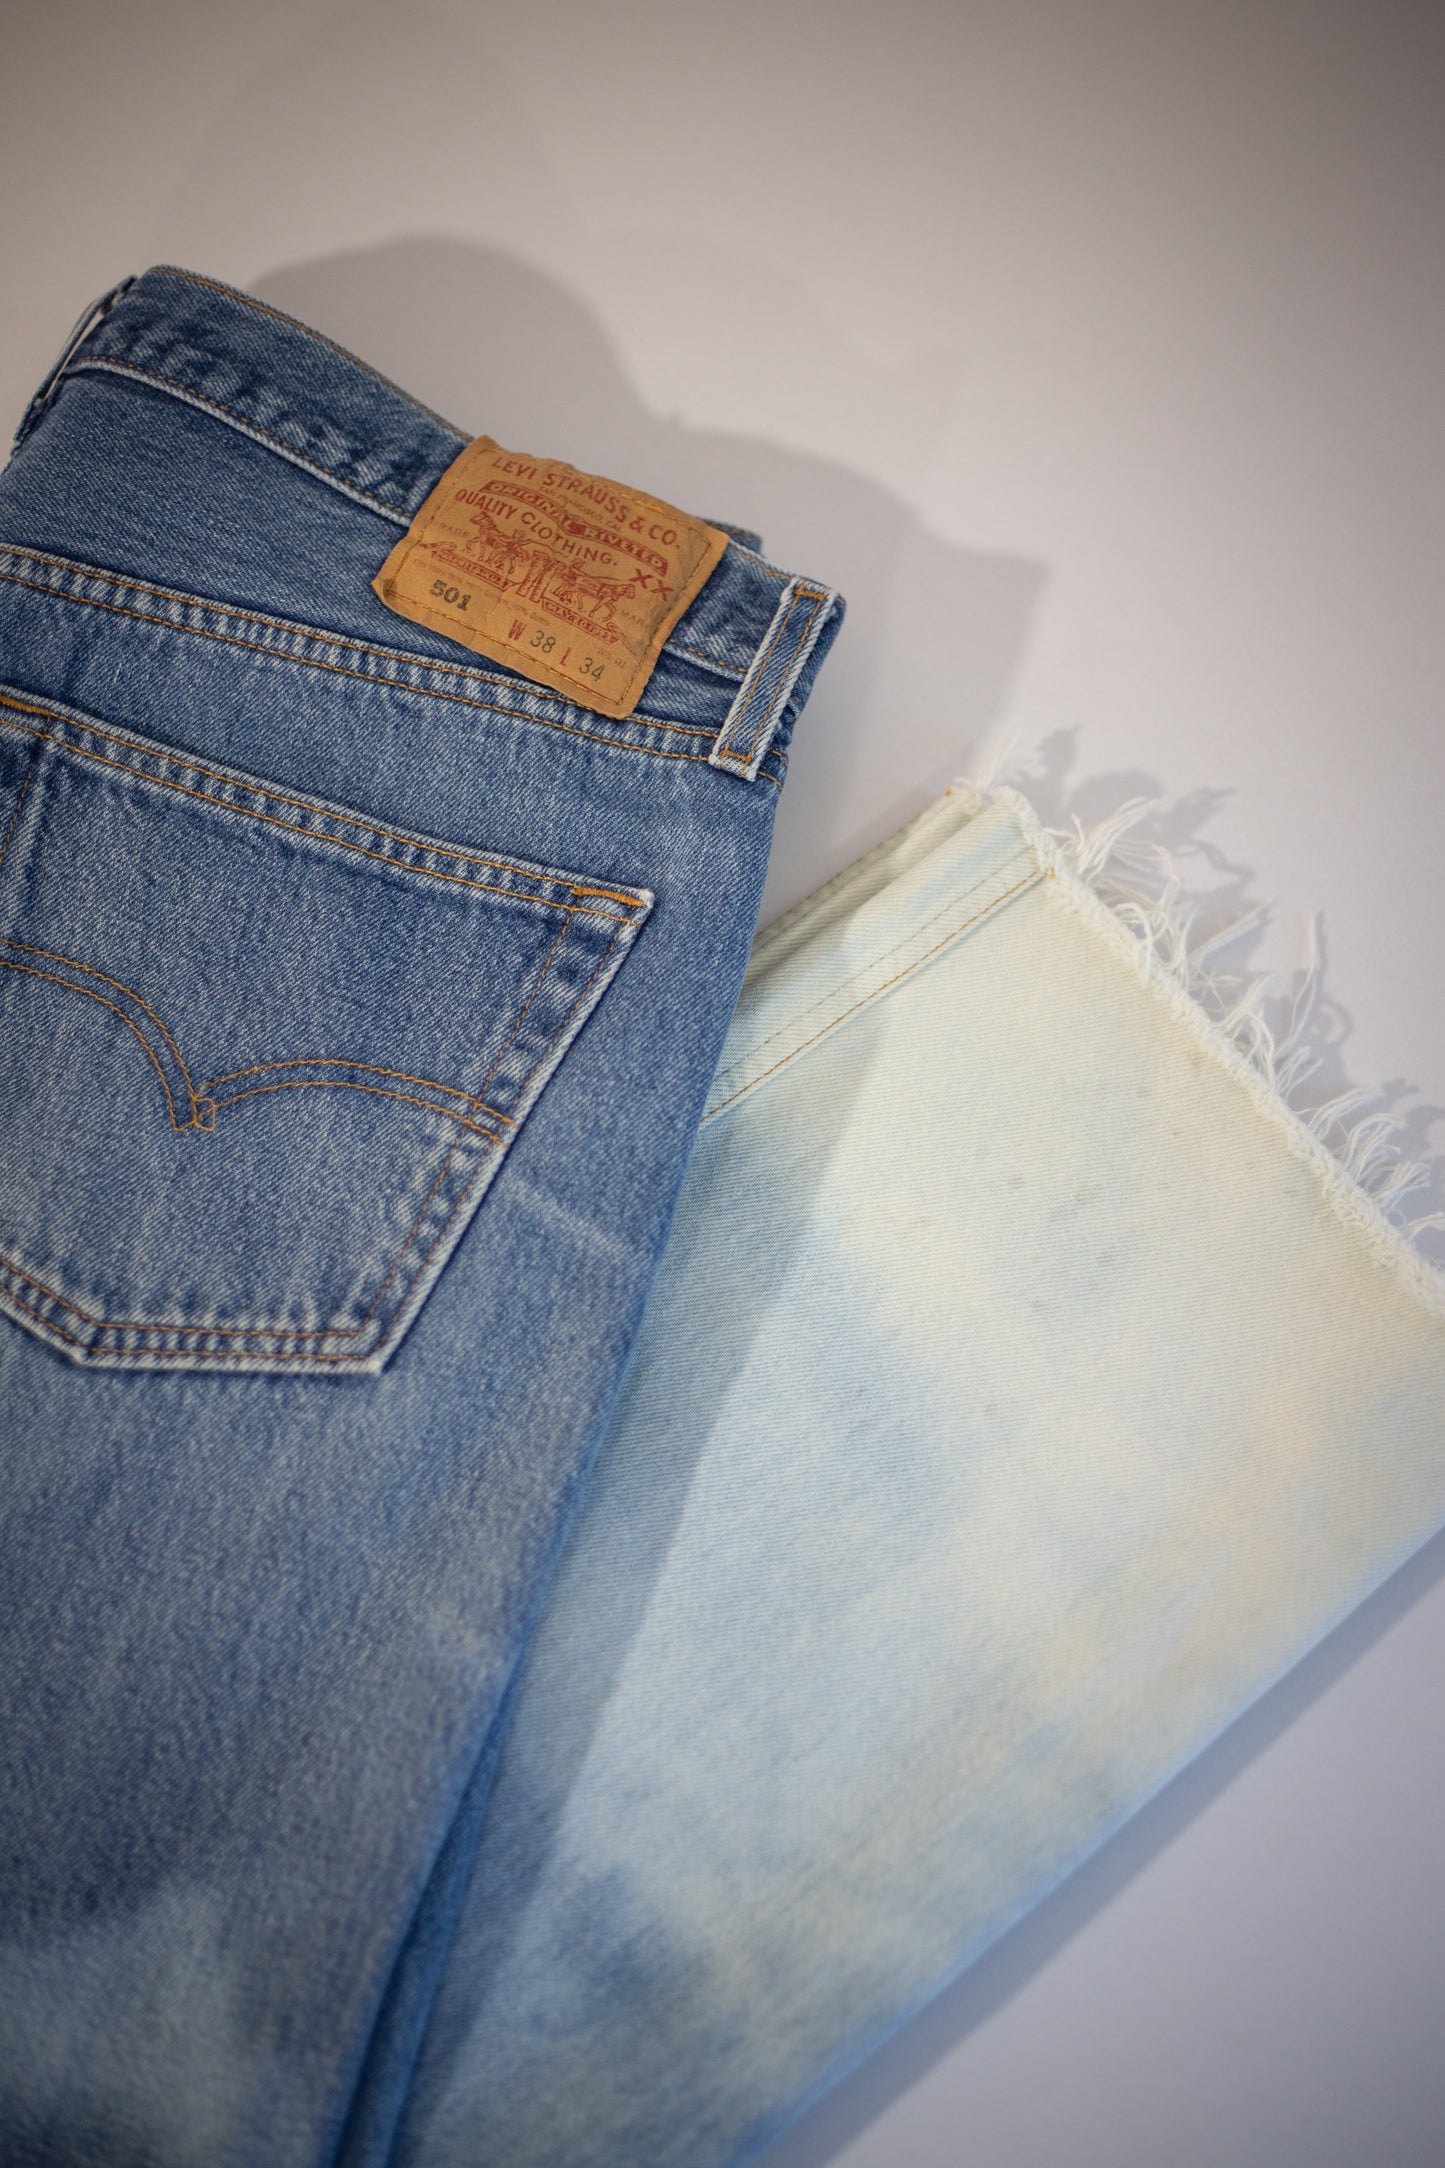 90's Levi's 501 Cut-Offs Jeans